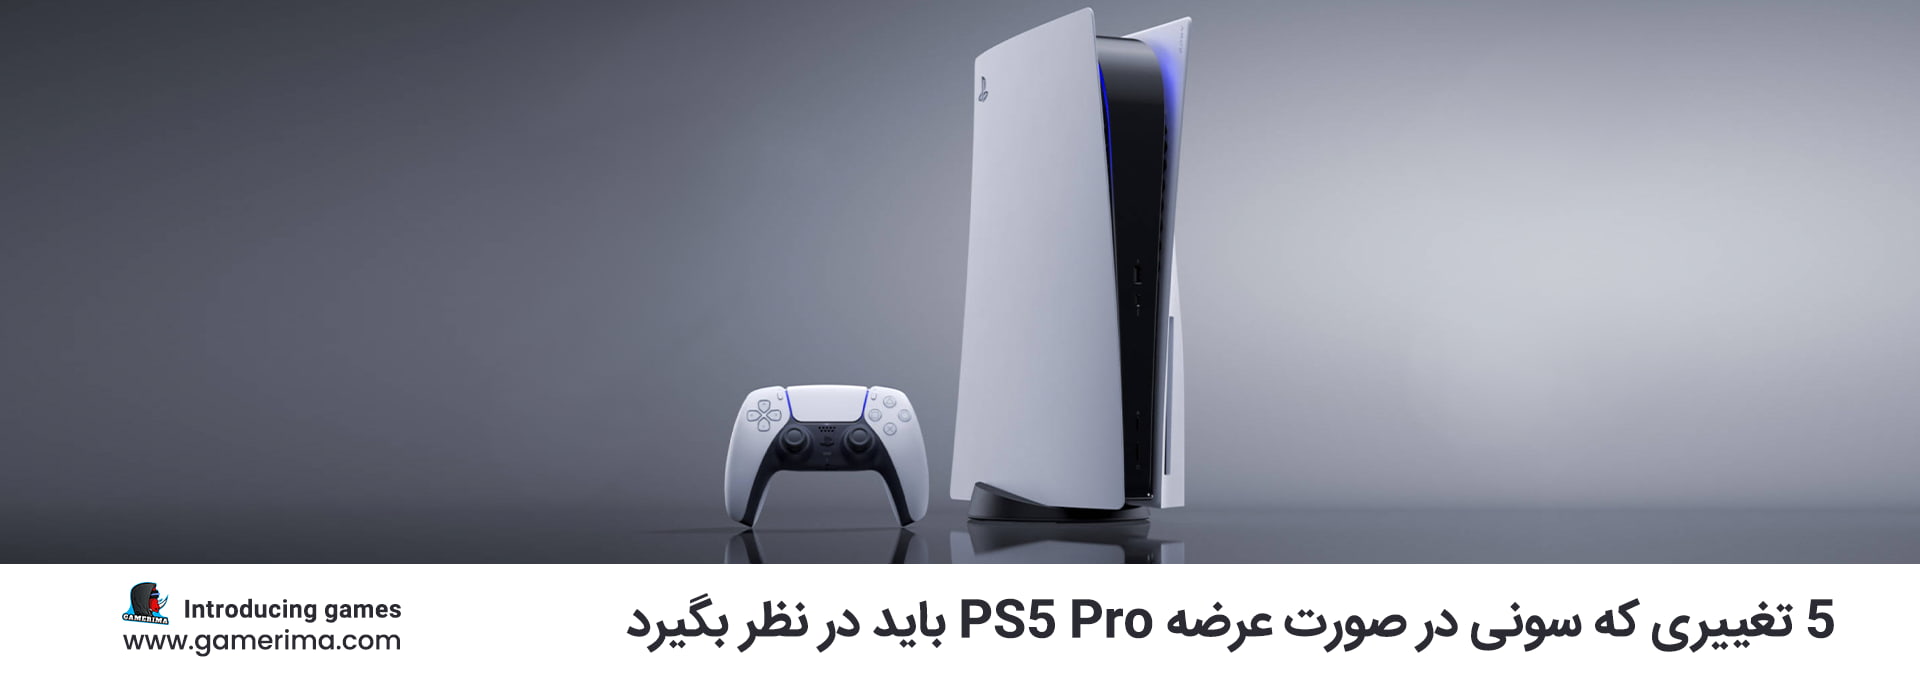 5 تغییری که سونی در صورت عرضه PS5 Pro باید در نظر بگیرد.